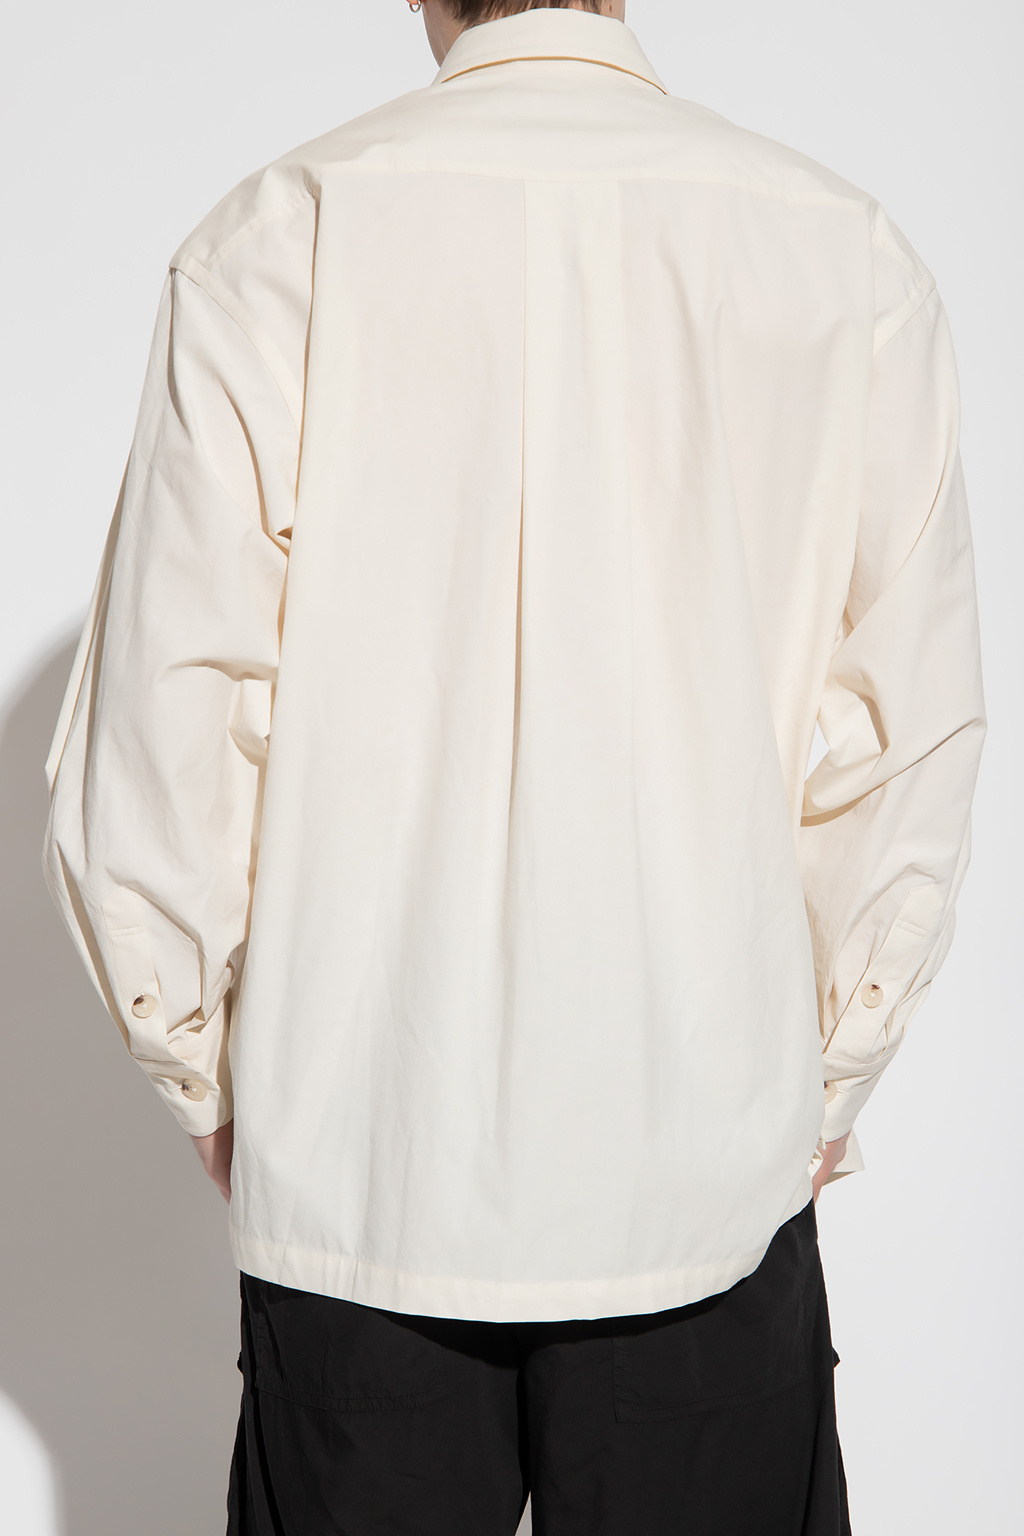 Kenzo Oversize Sleeveless shirt